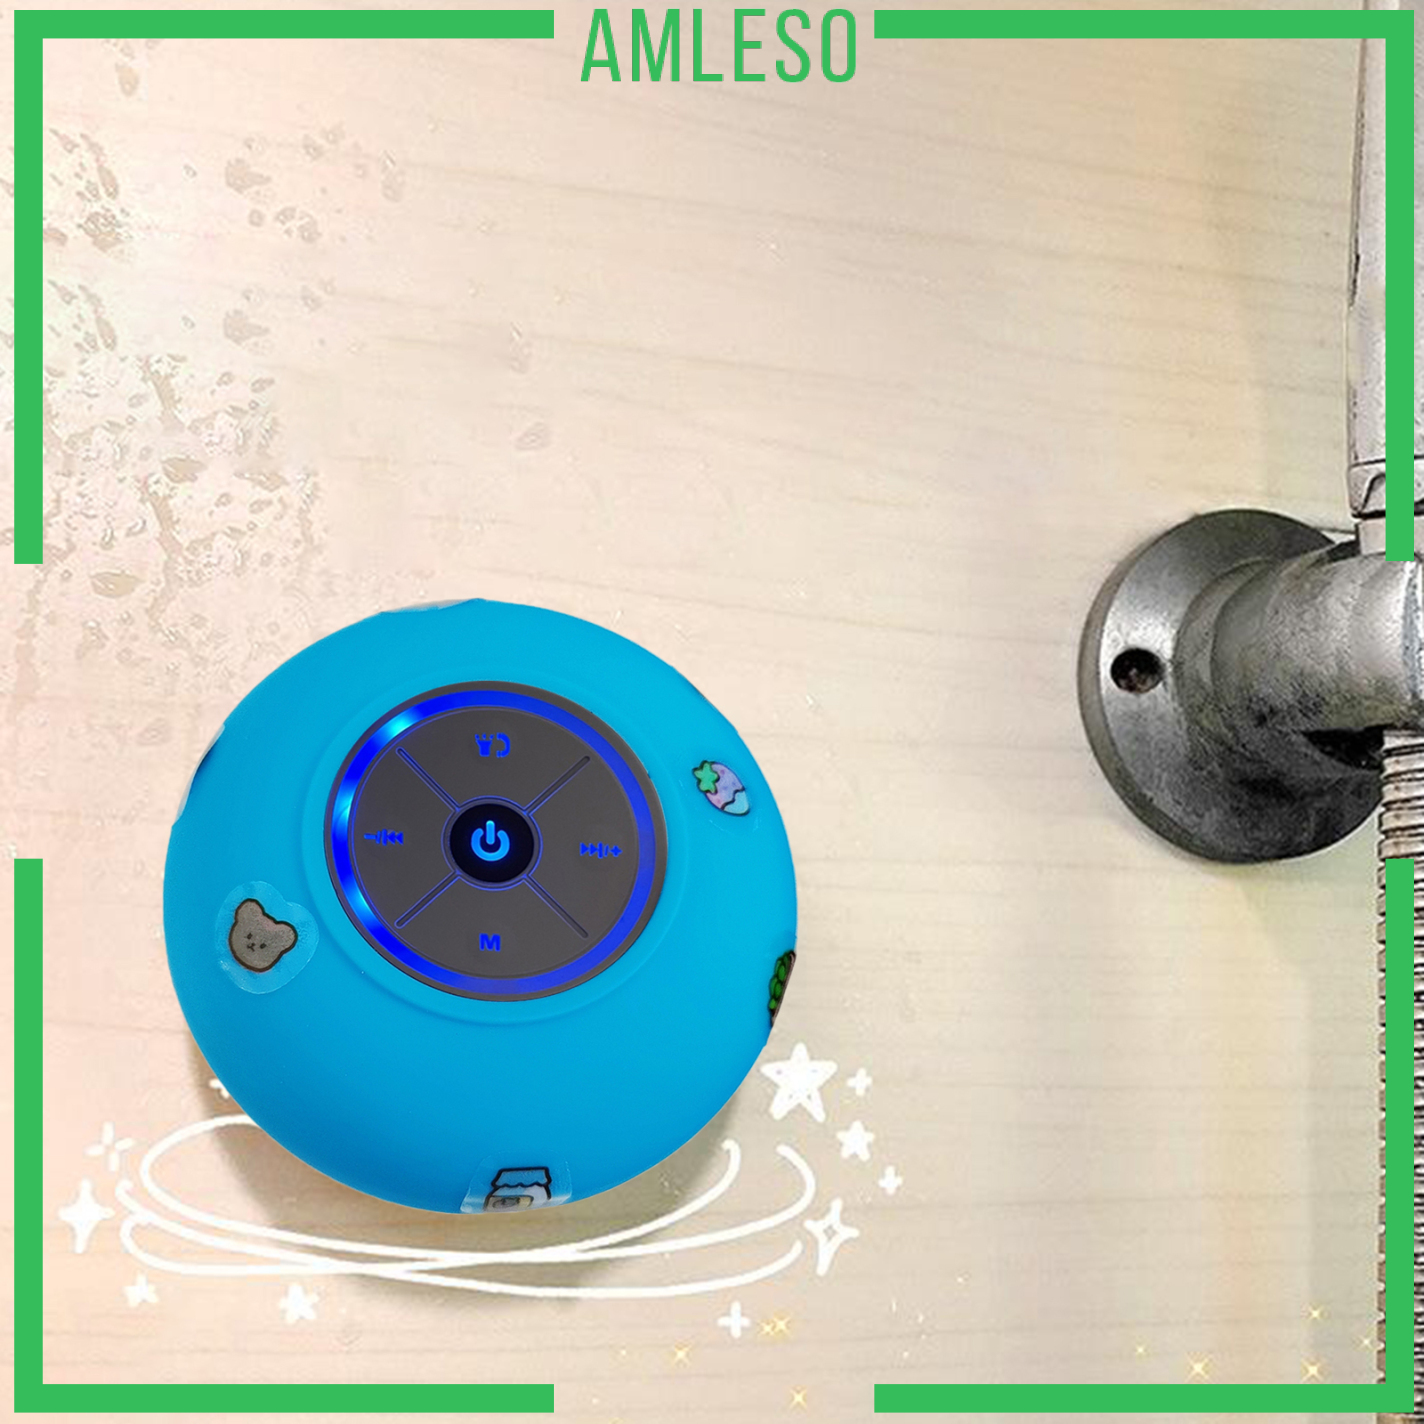 [AMLESO]Bluetooth Shower Speaker Certified Waterproof Wireless